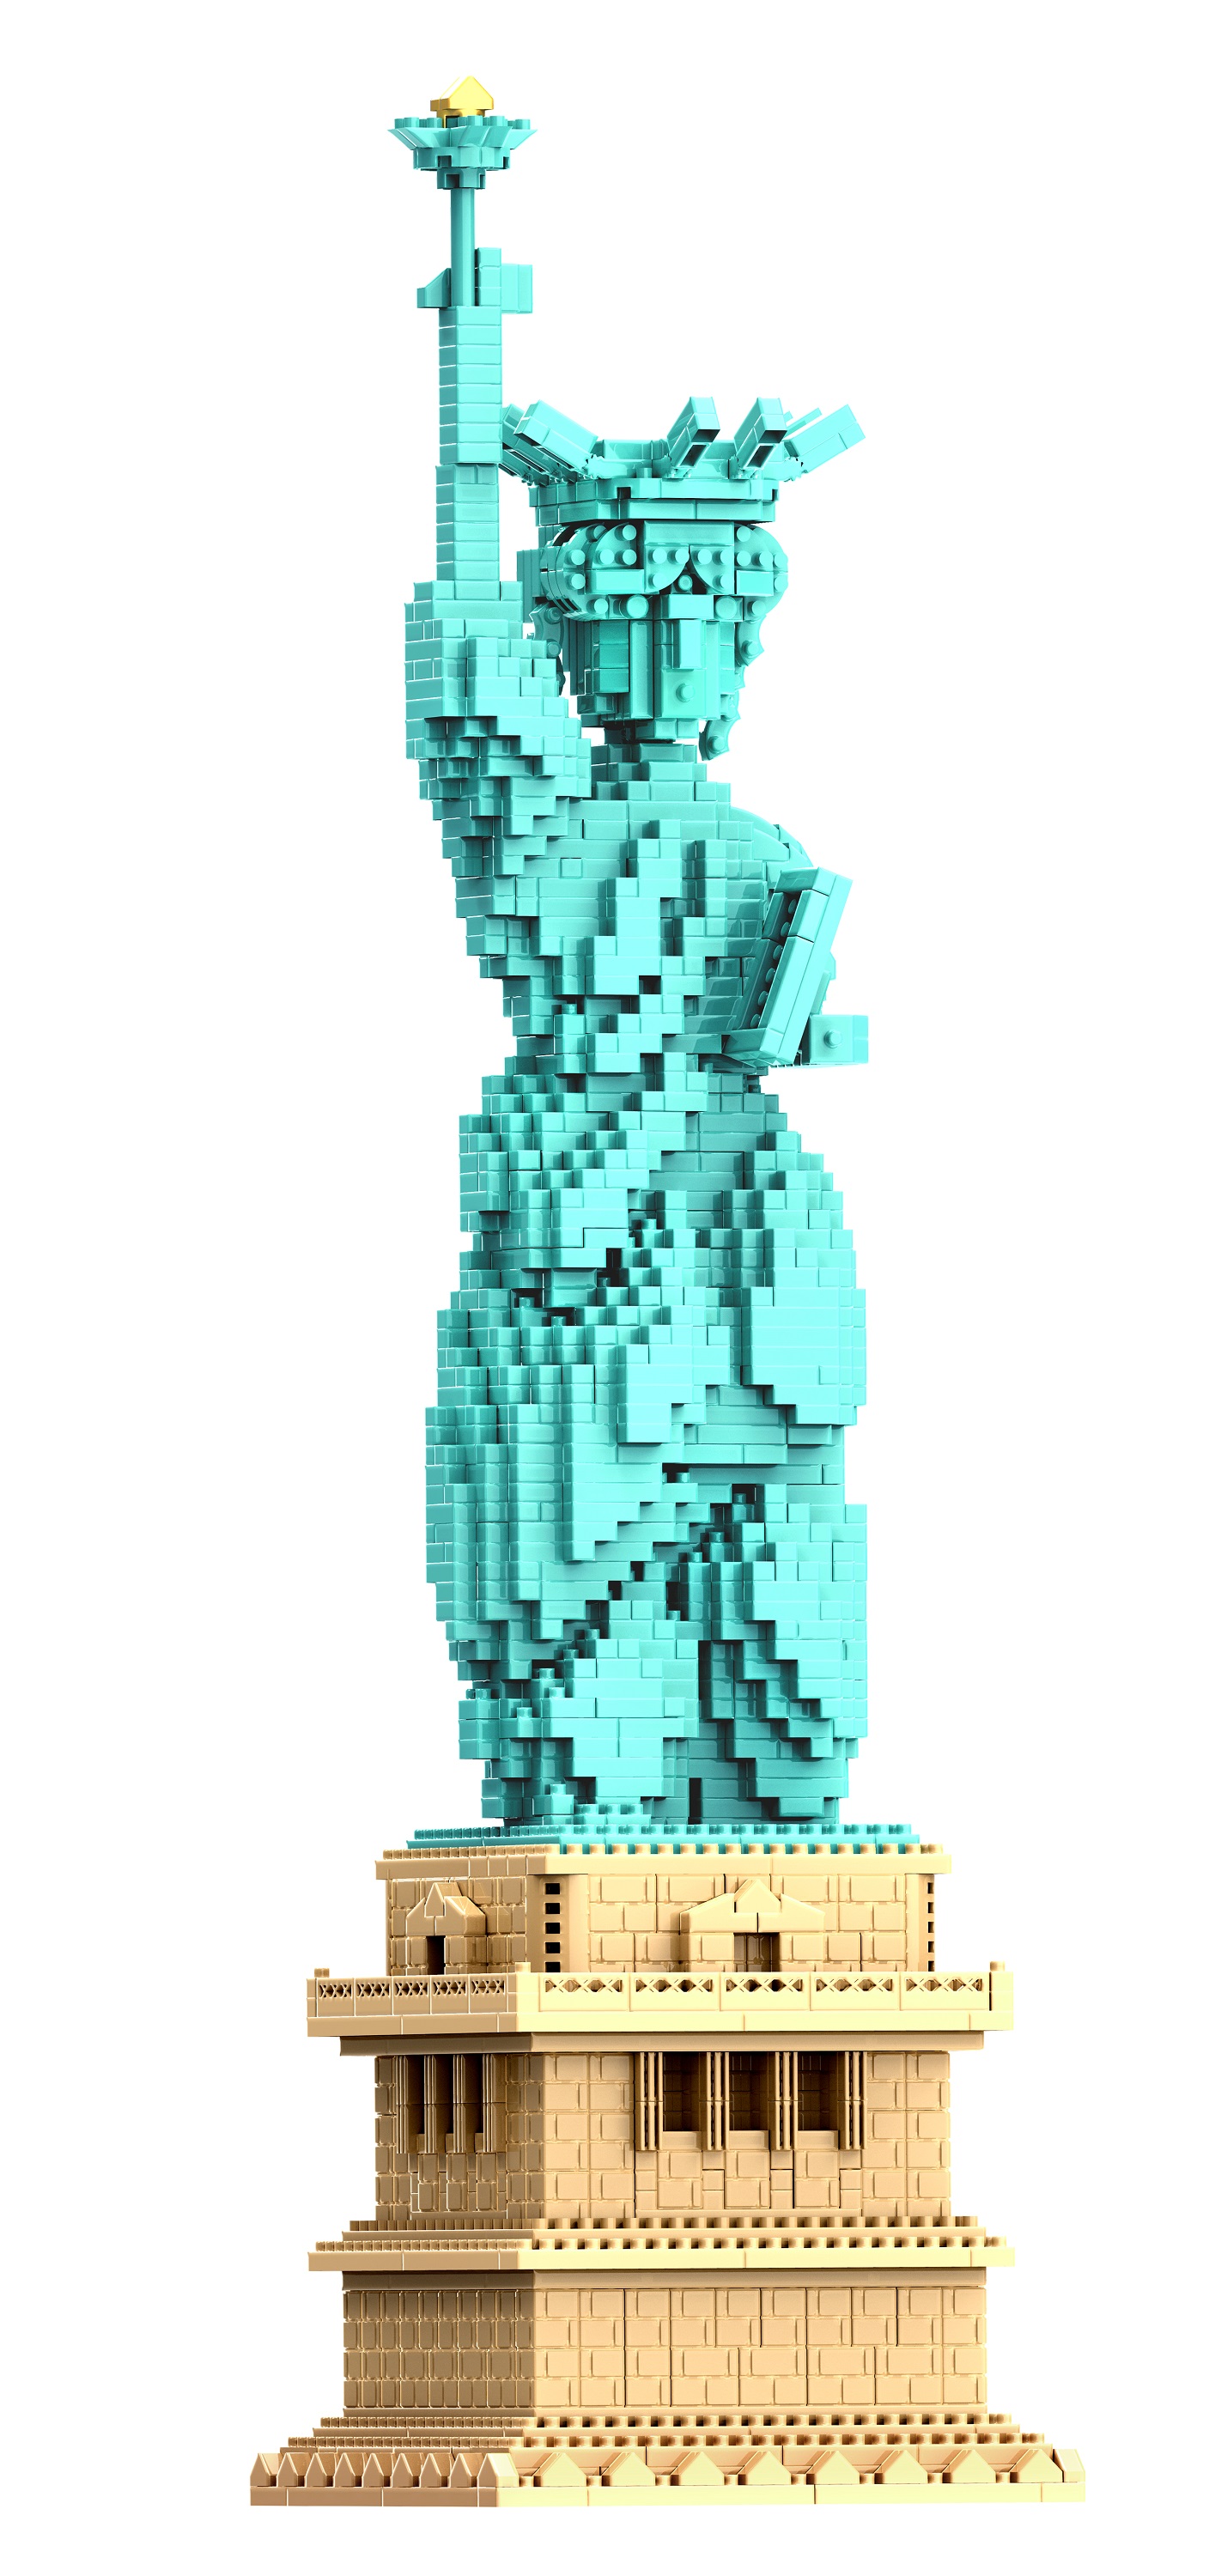 3D конструктор из миниблоков RTOY Статуя Свободы 2950 эл JM20810 конструктор 3d из миниблоков rtoy любимые герои солдатик 1100 эл jm88302